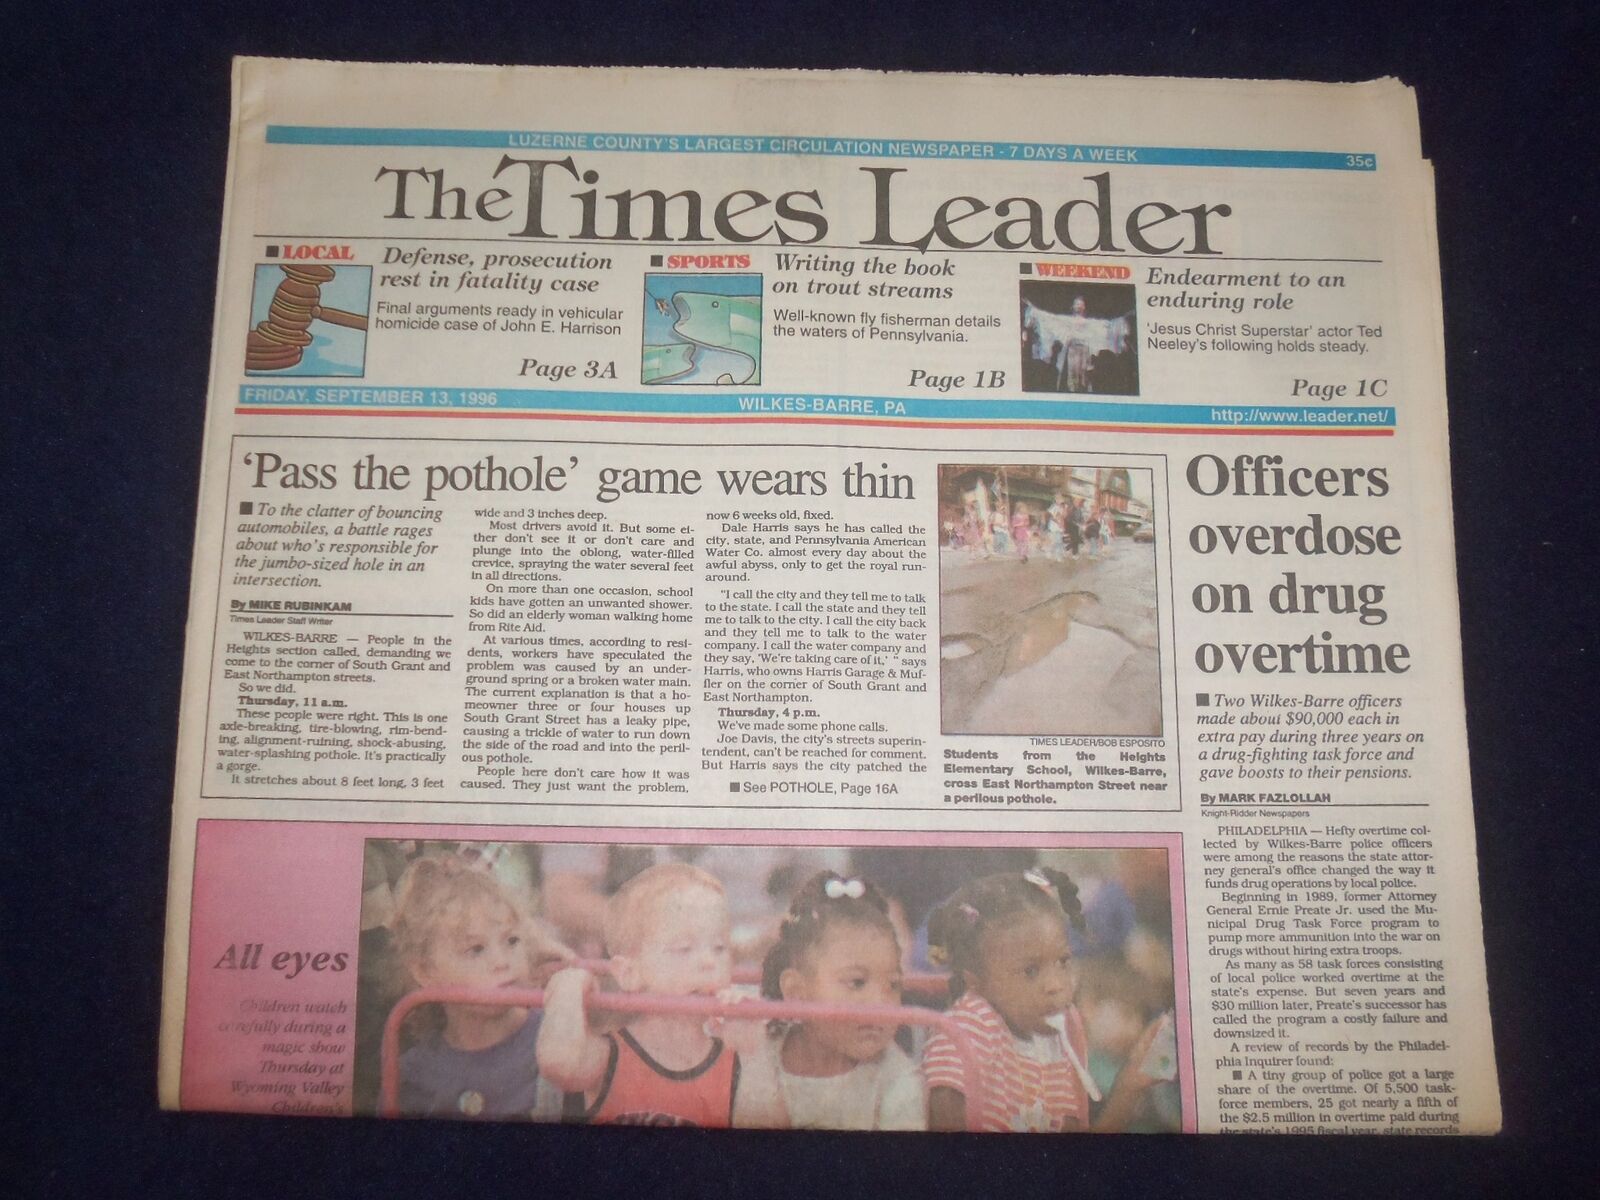 1996 SEP 13 WILKES-BARRE TIMES LEADER-OFFICERS OVERDOSE ON DRUG OVERTIME-NP 8162